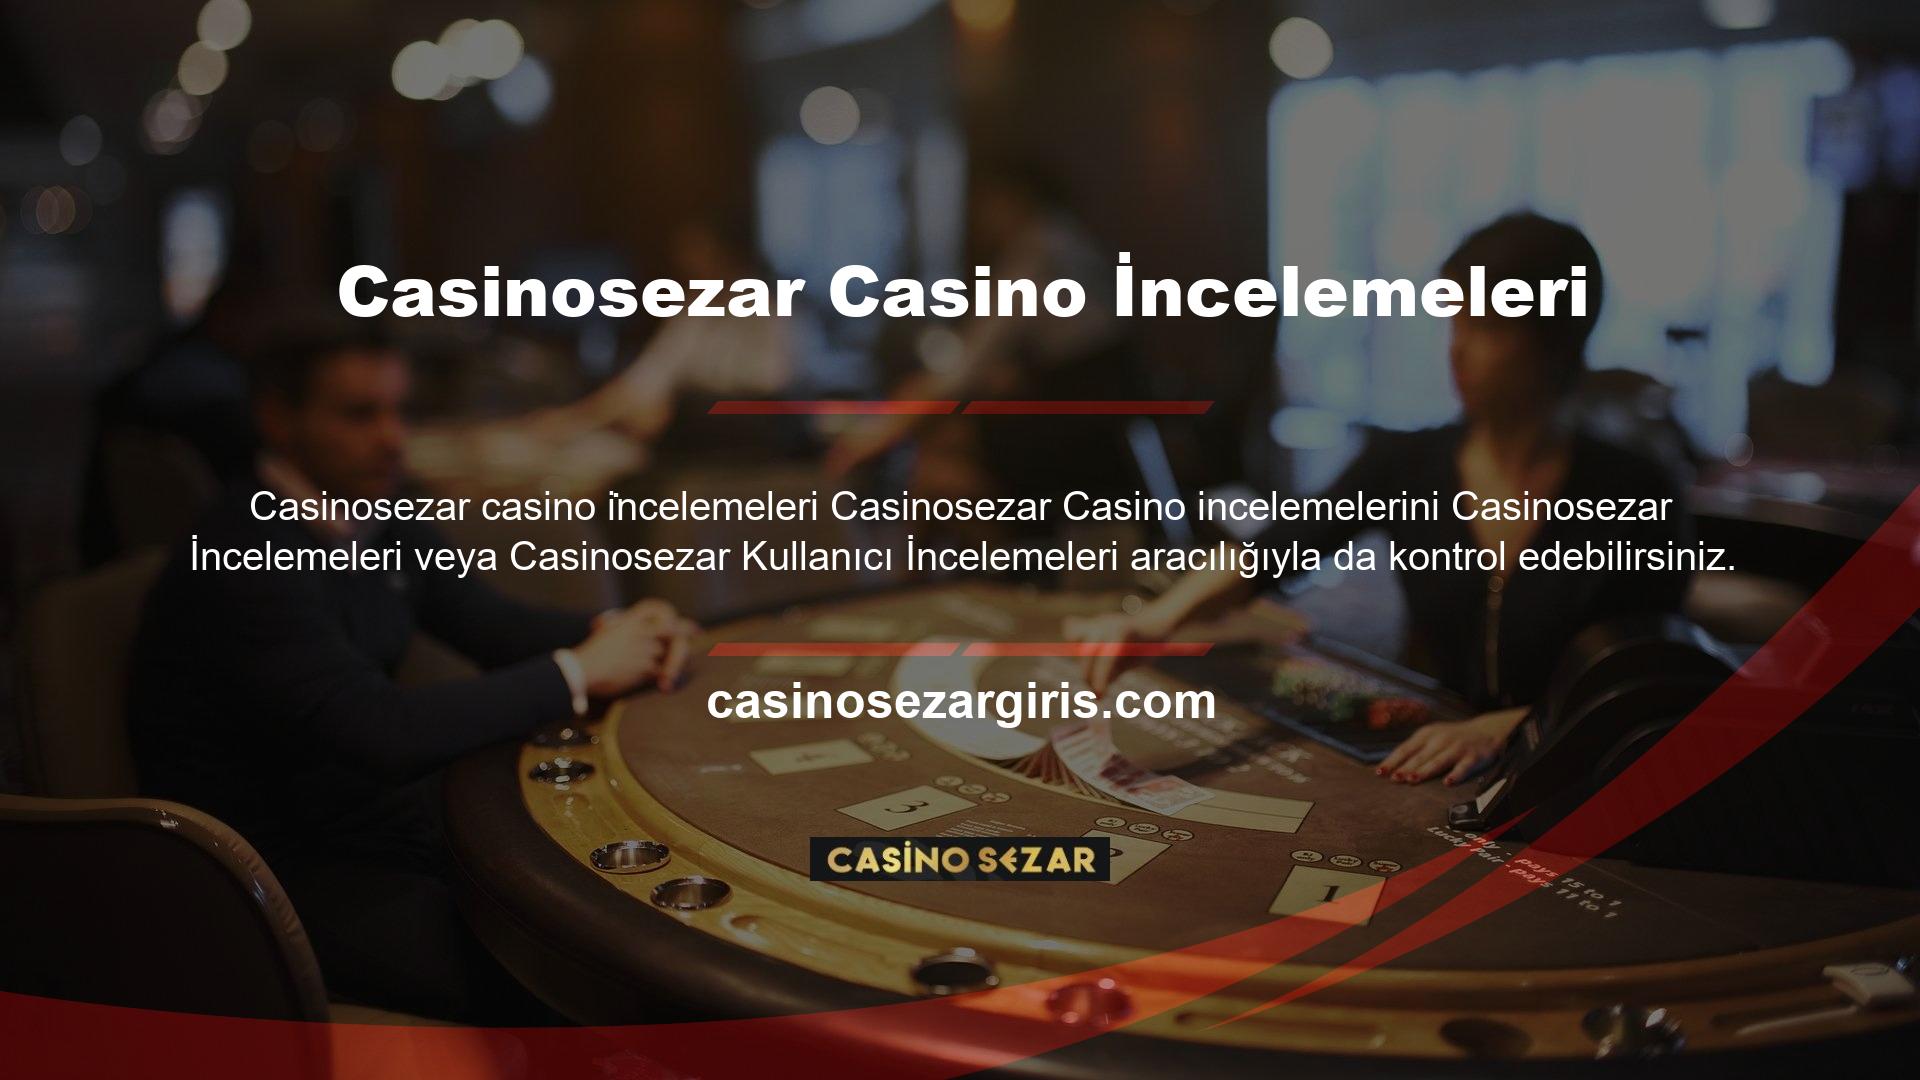 Casino slotları, canlı casino, poker, bingo ve benzeri oyunlardan çevrimiçi para kazanma fırsatı sunan bir web sitesidir